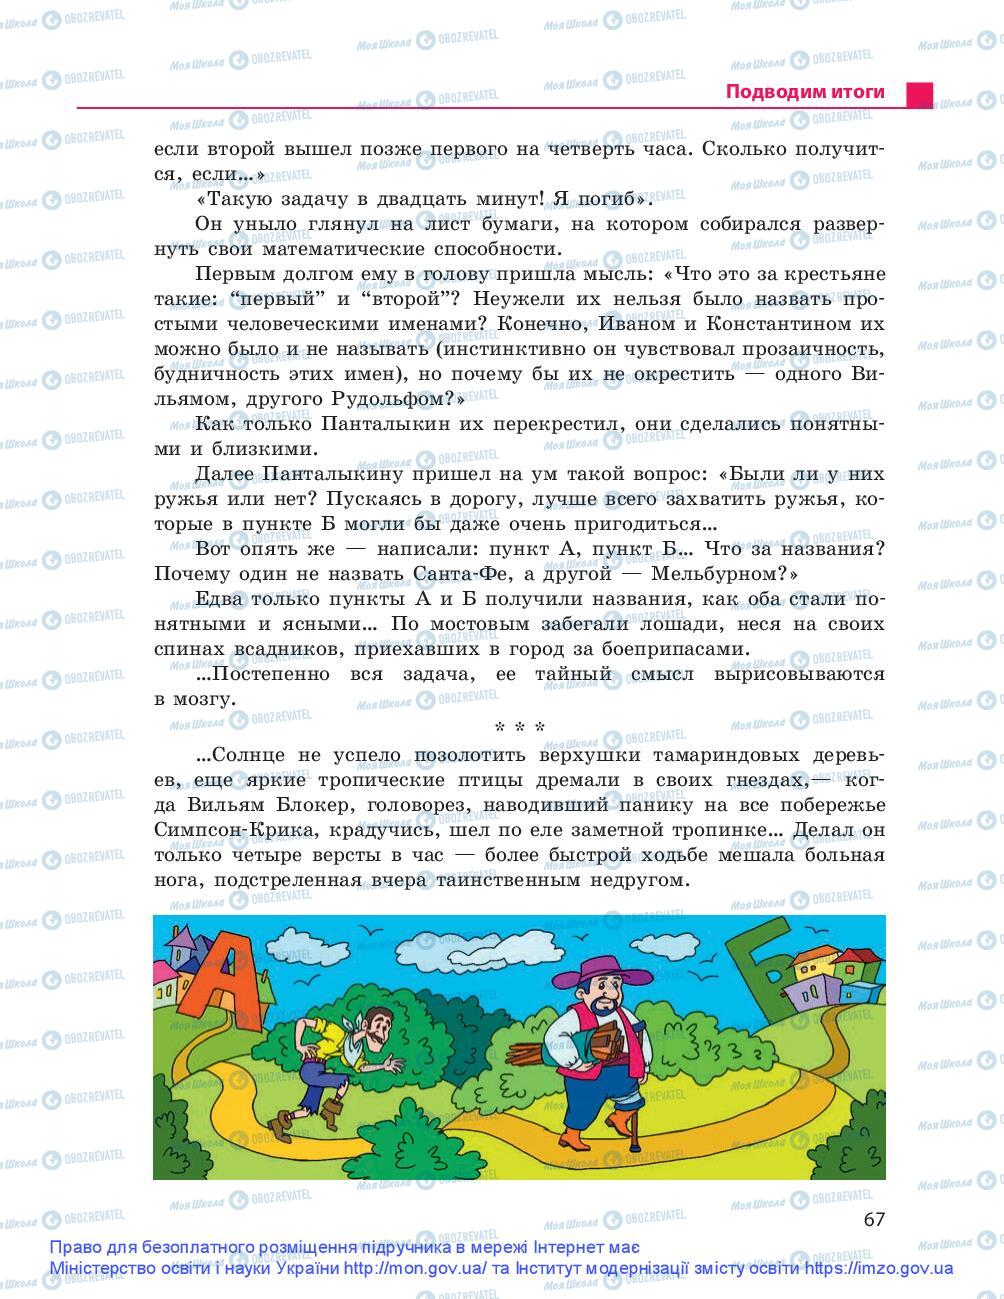 Учебники Русский язык 9 класс страница 67